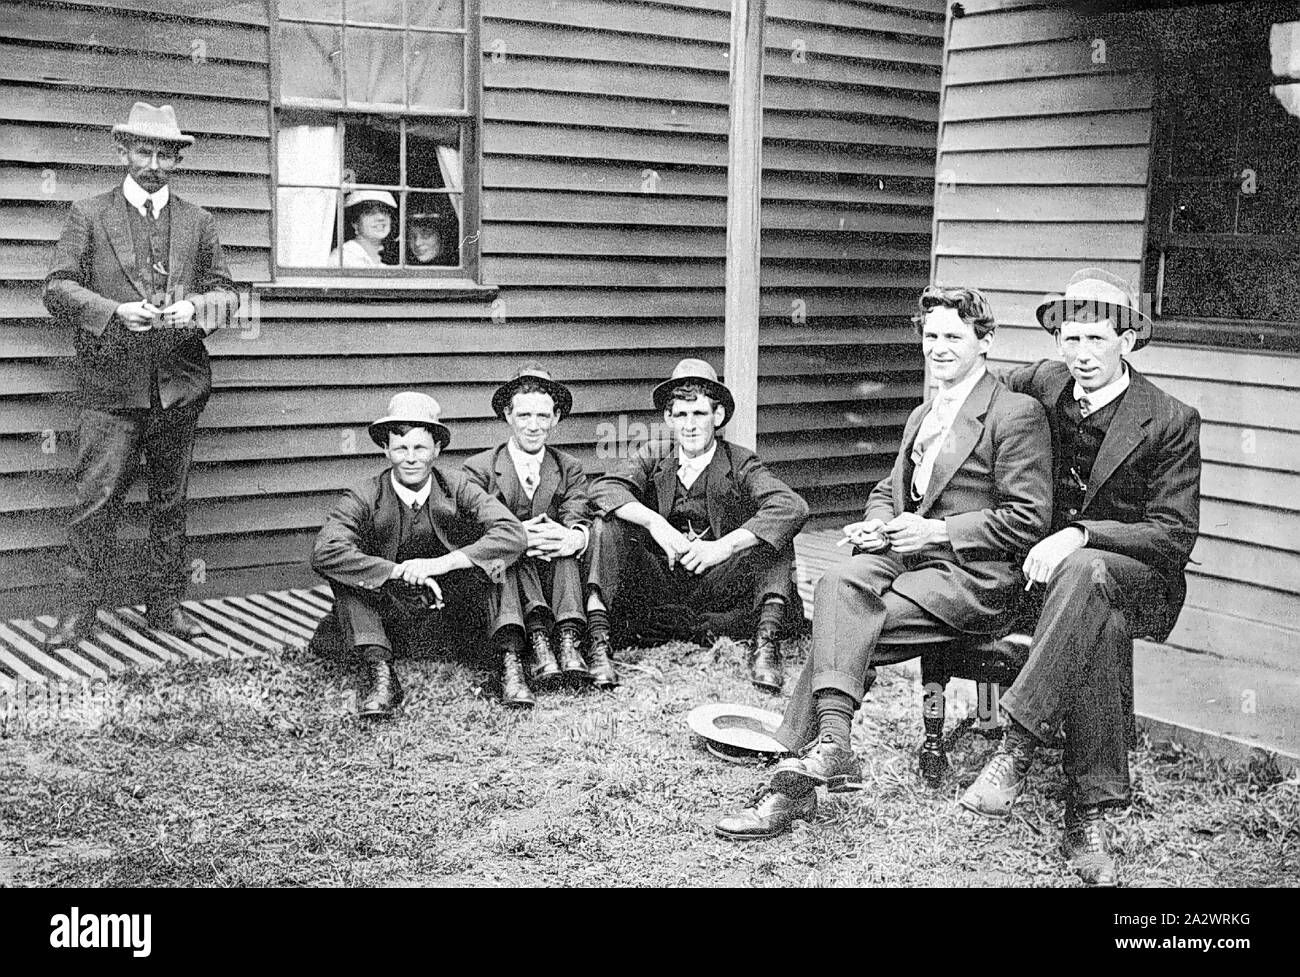 Negativo - Strathdownie, Victoria, 1920, sei uomini al di fuori del Strathdownie Hotel. Due donne peer attraverso la finestra Foto Stock